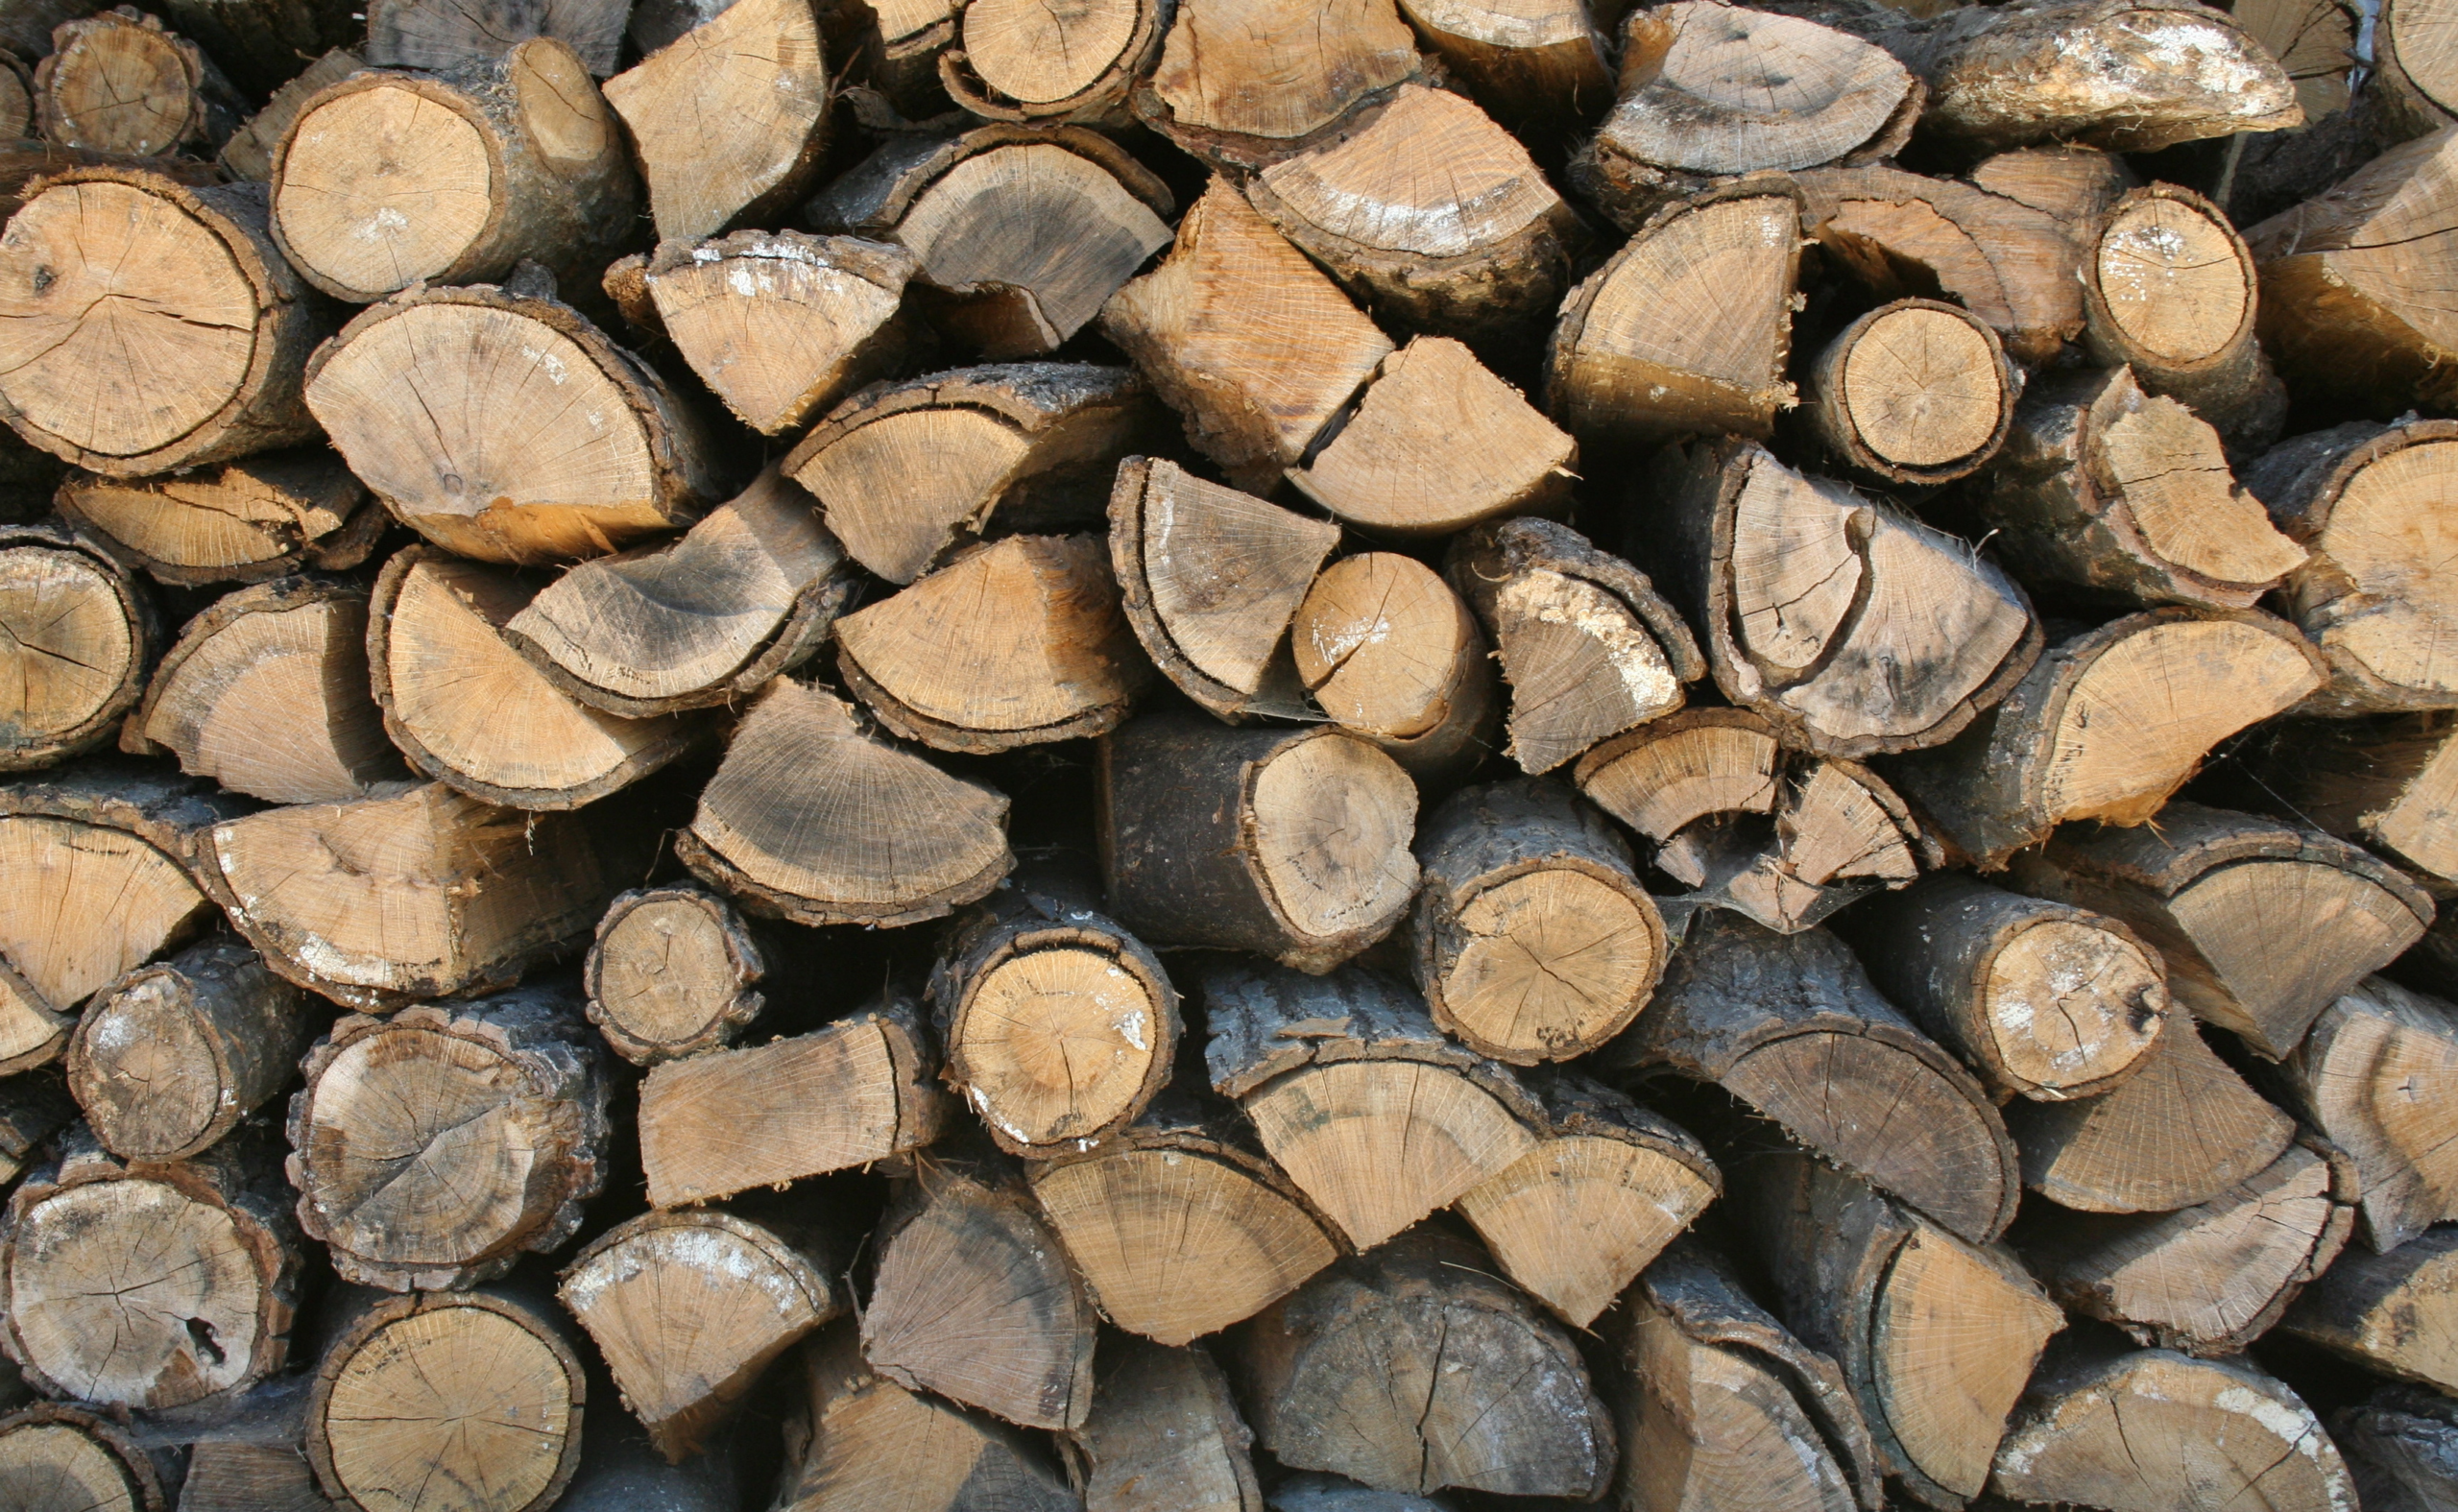 White Birch Firewood - Premier Firewood Company